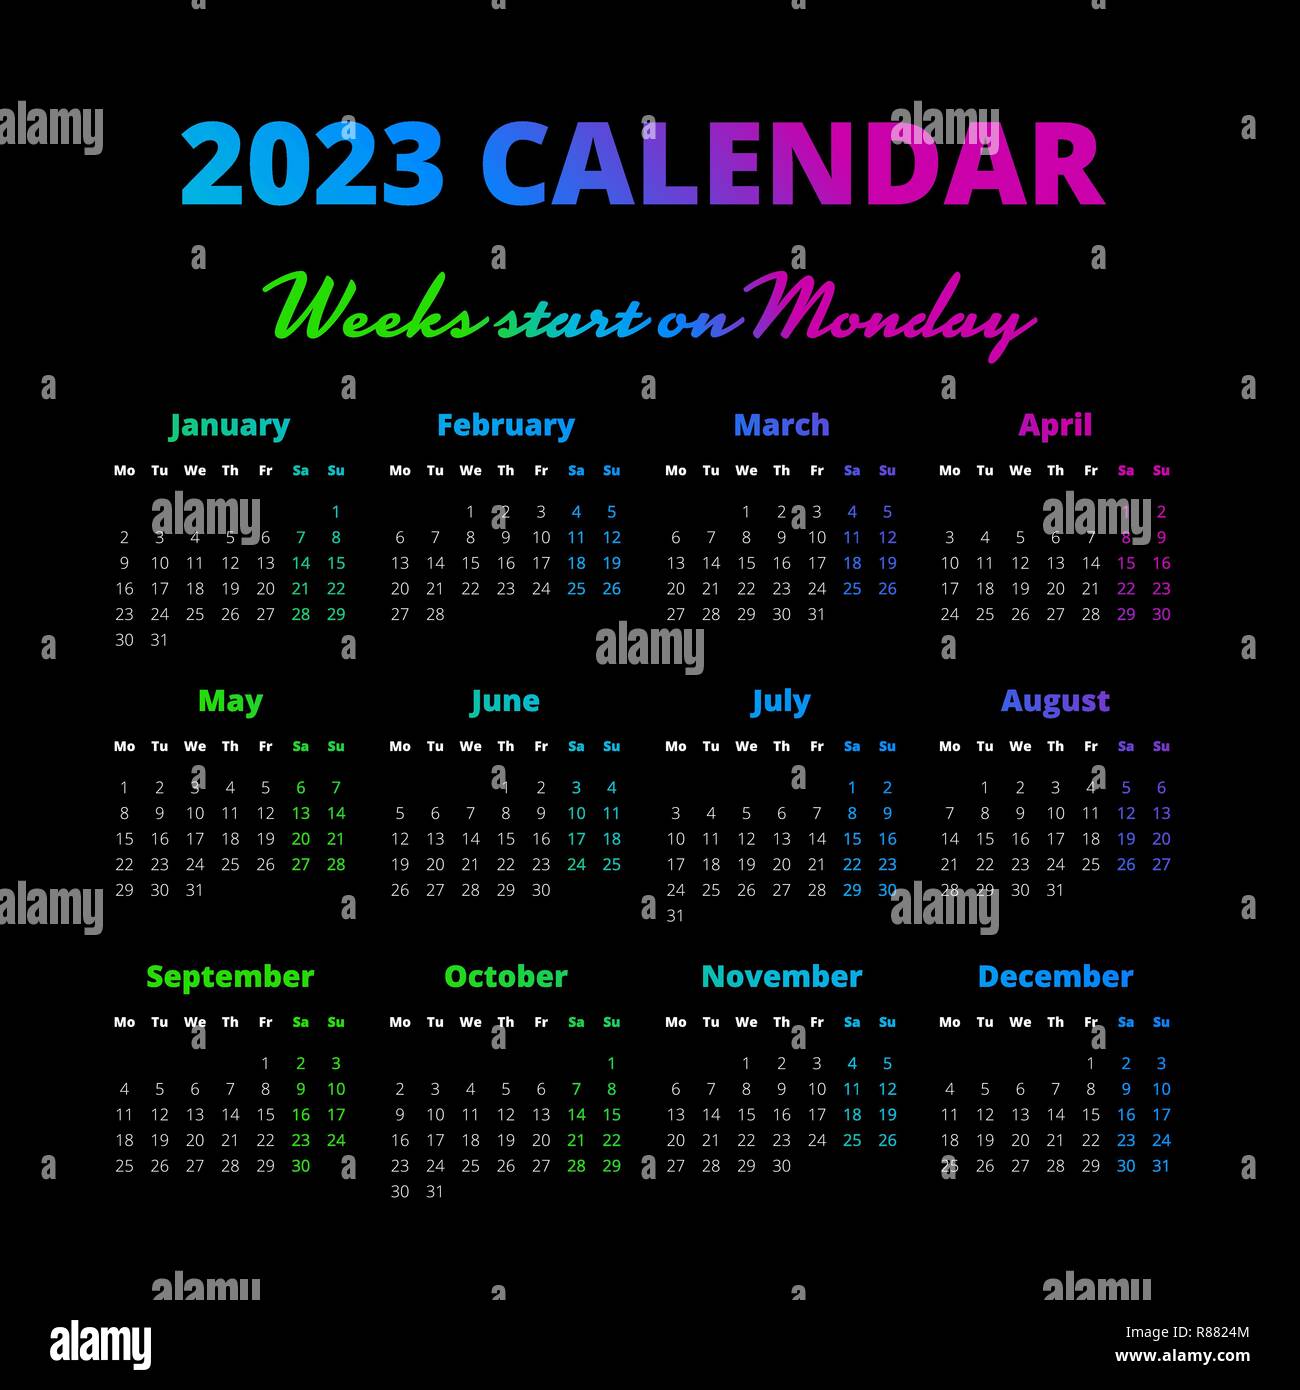 Lịch đơn giản: Những hình ảnh đẹp mắt trên lịch đơn giản này sẽ đưa bạn đến cuối năm một cách dễ dàng và tiện lợi. Với thiết kế tối giản nhưng đầy sáng tạo, lịch đơn giản giúp bạn dễ dàng truy cập thông tin về ngày, tháng và sự kiện trong năm.